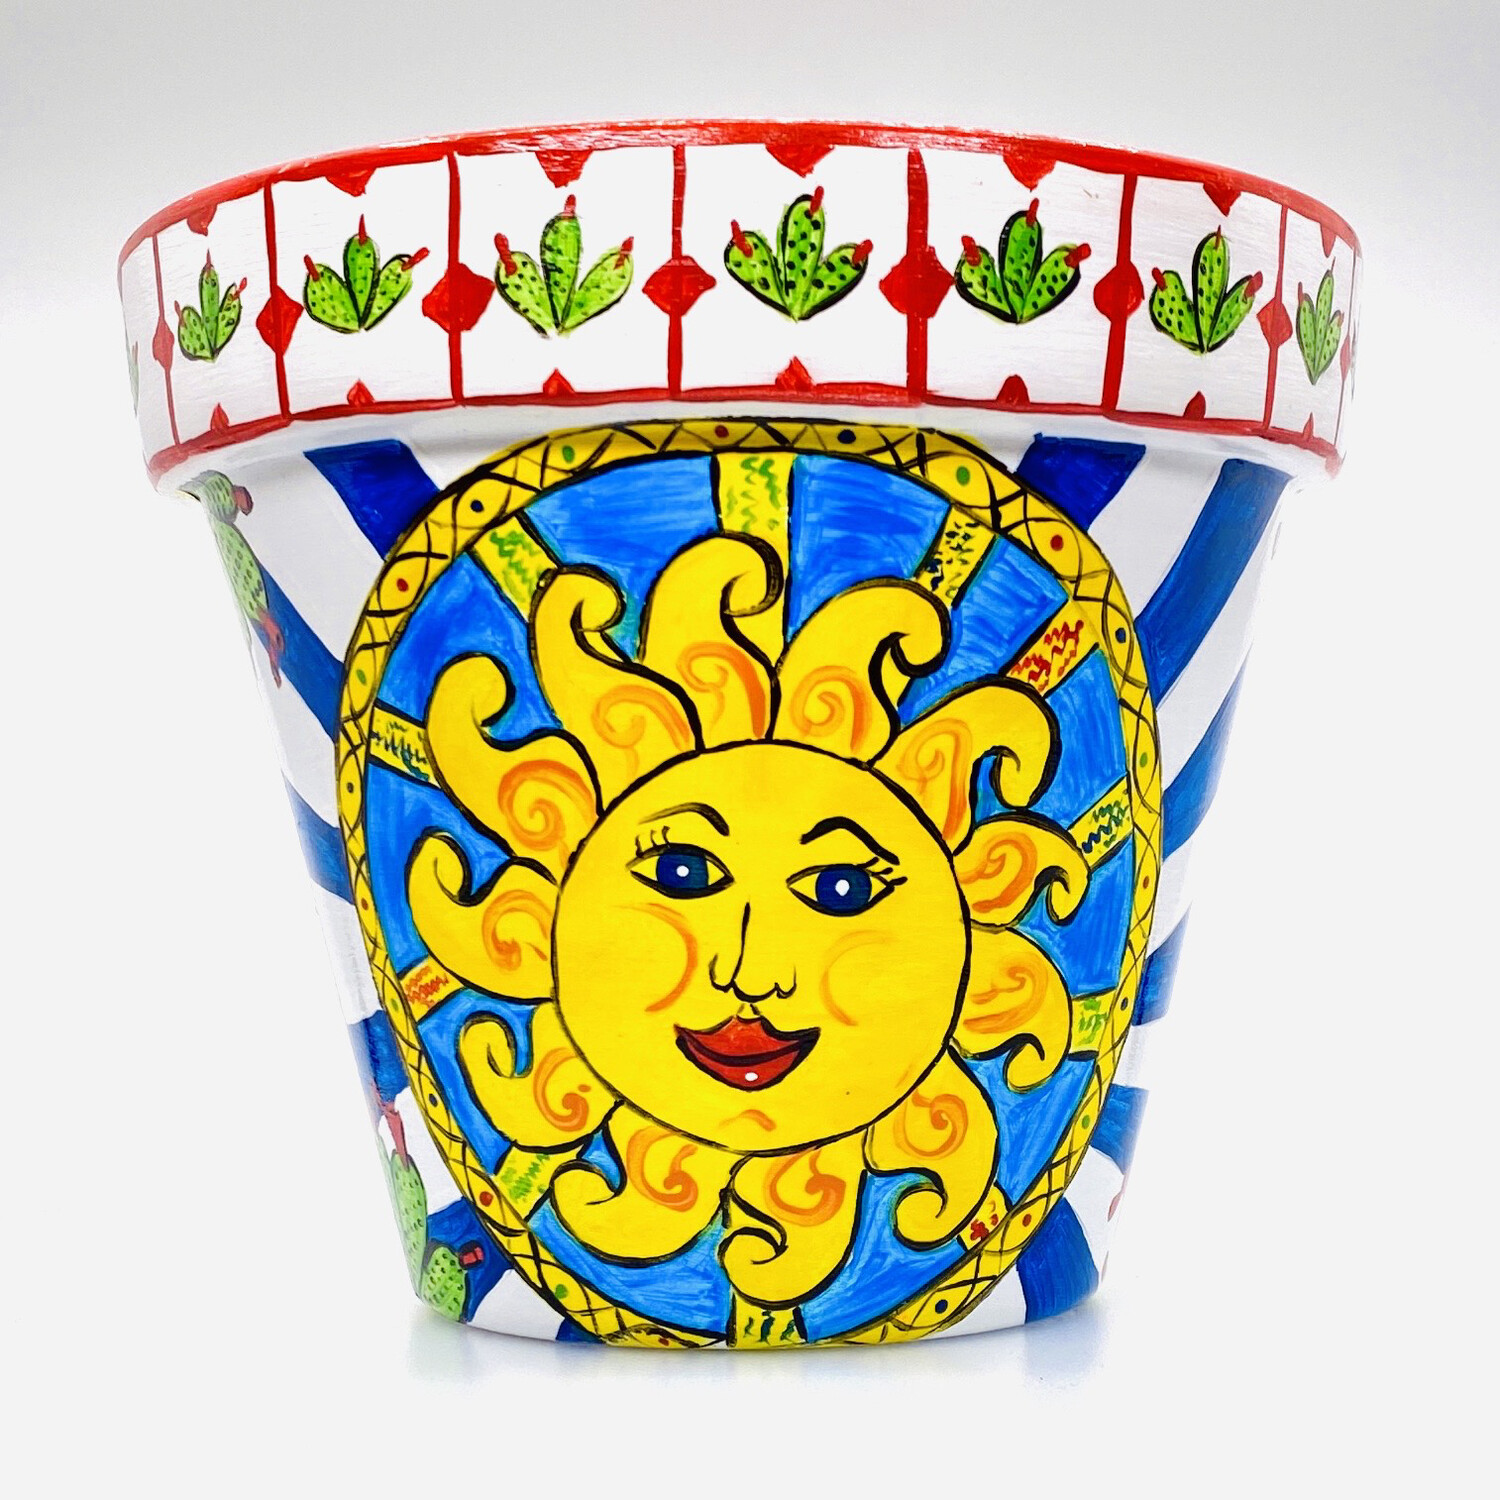 "New, 2021, Il sole di Sicilia" hand painted ceramic planter